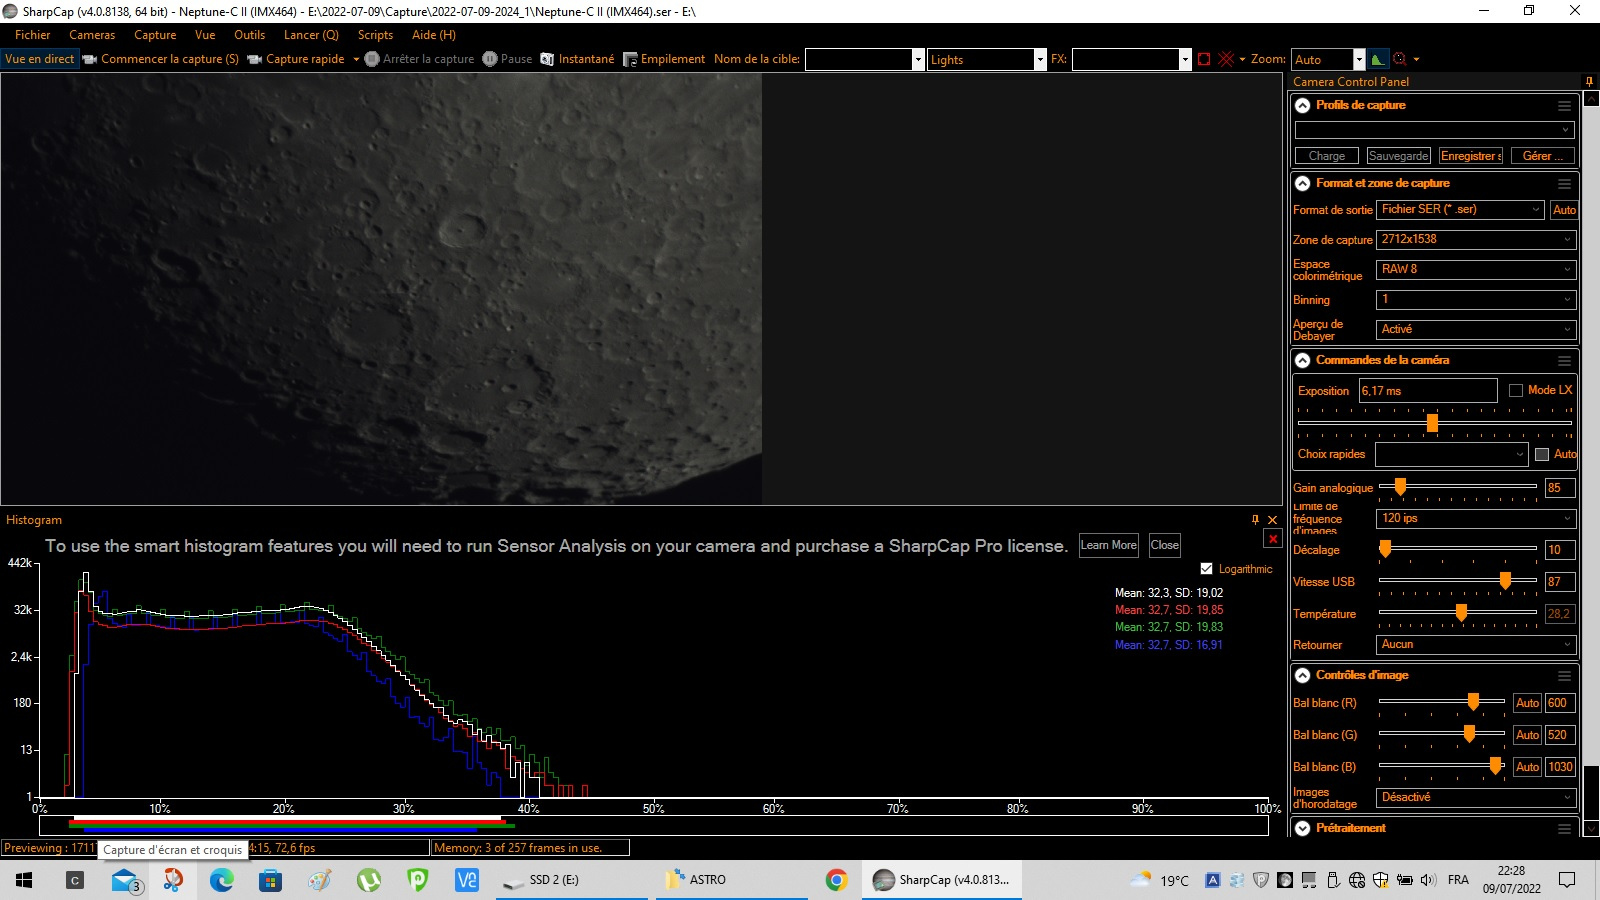 sharpcap-lune-2.jpg.447af92d4a3c36941424853794b916f7.jpg